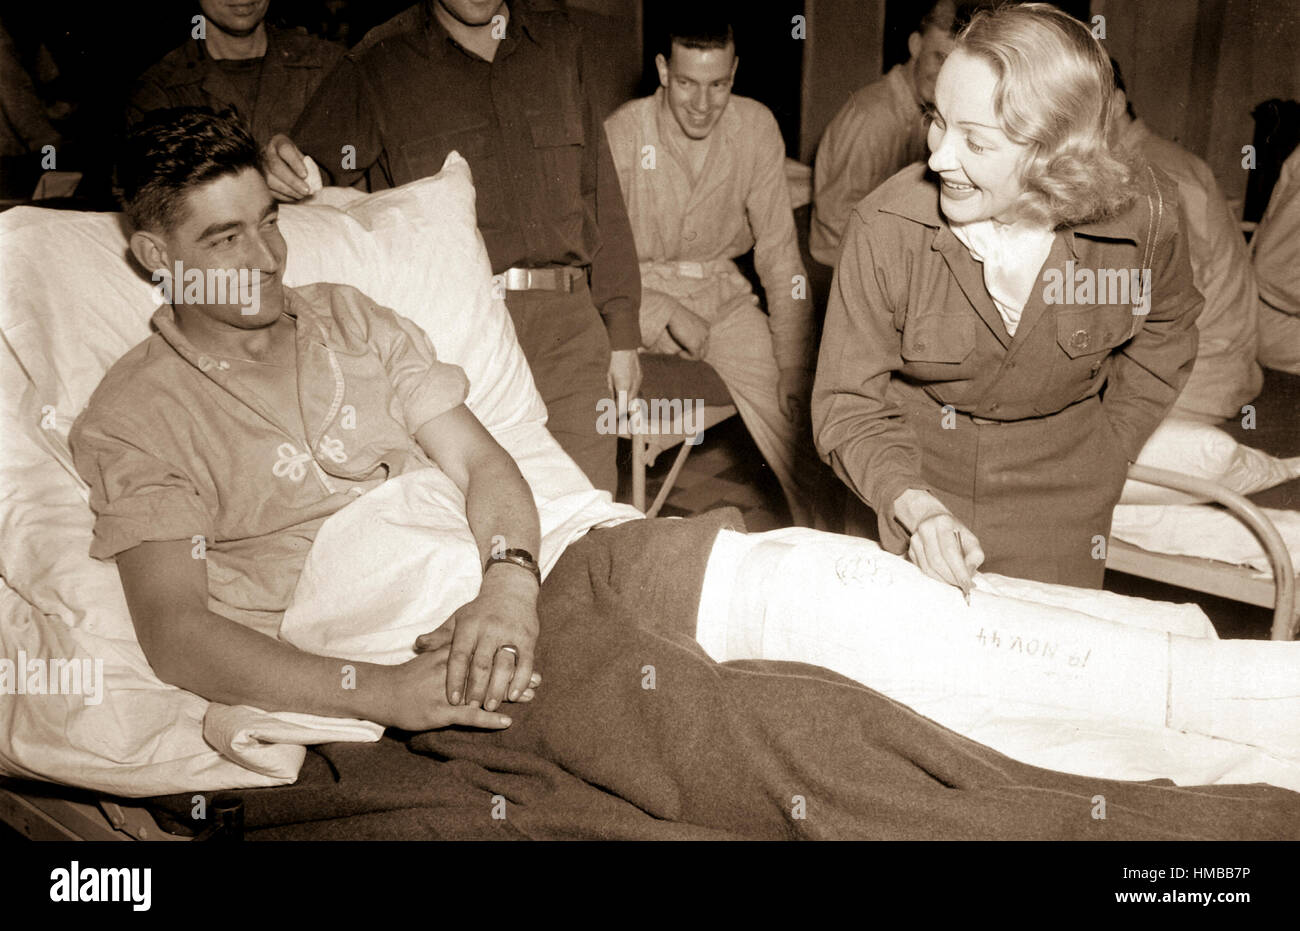 Marlene Dietrich, Bewegung Abbildung Schauspielerin, Autogramme der Darsteller auf dem Bein des Tec 4 Earl D. McFarland von Cavider, Texas, Vereinigten Staaten Krankenhaus in Belgien, wo sie das GIs unterhaltsam gewesen, hat.  24. November 1944. Tuttle. (Armee) NARA-DATEI #: 111-SC-232989 KRIEG & KONFLIKT #: 758 Stockfoto